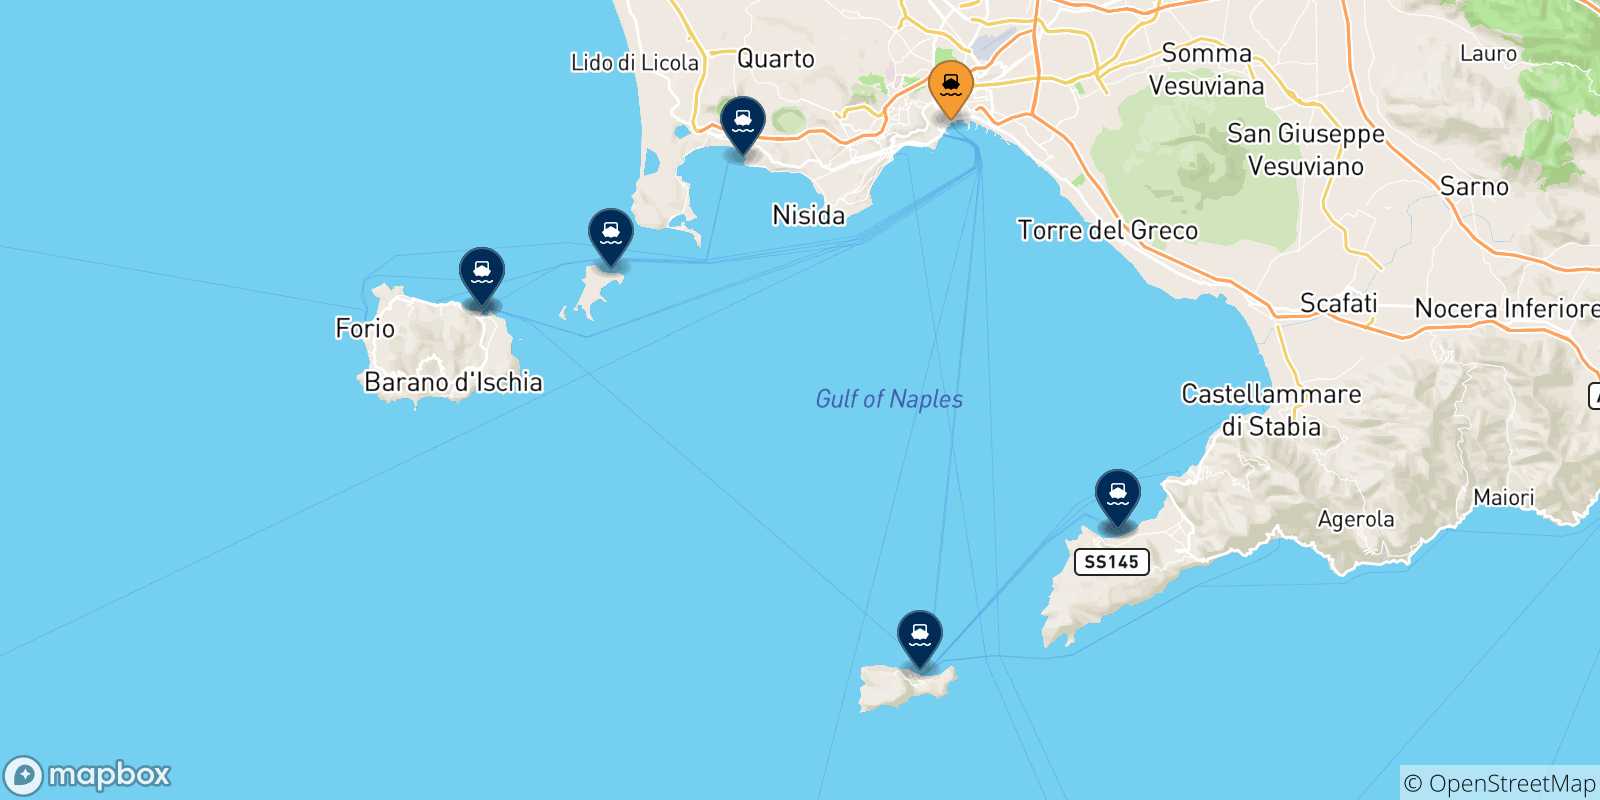 Mappa delle possibili rotte tra Napoli Beverello e l'Italia